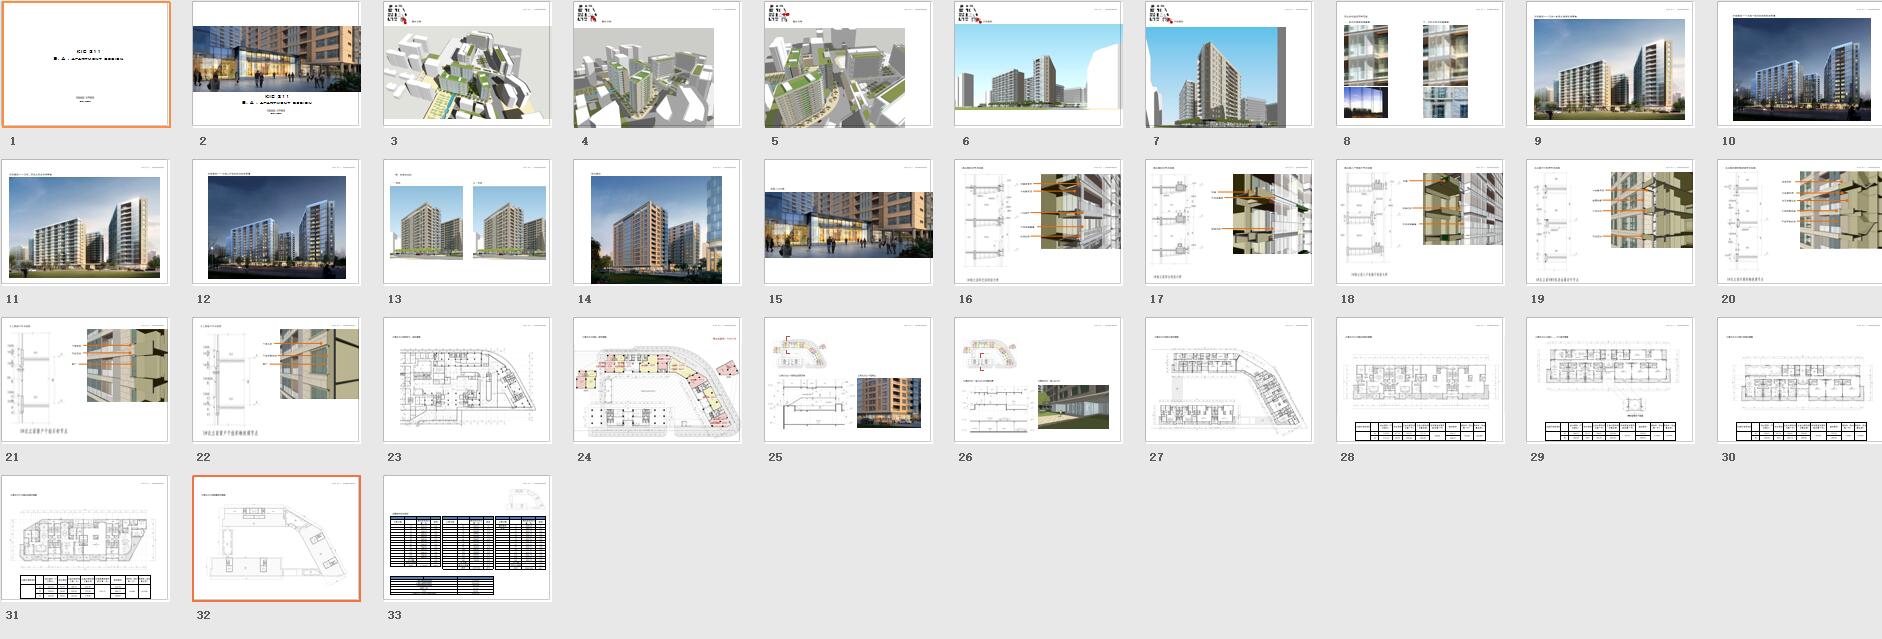 创智公寓酒店建筑方案文本设计-总缩览图